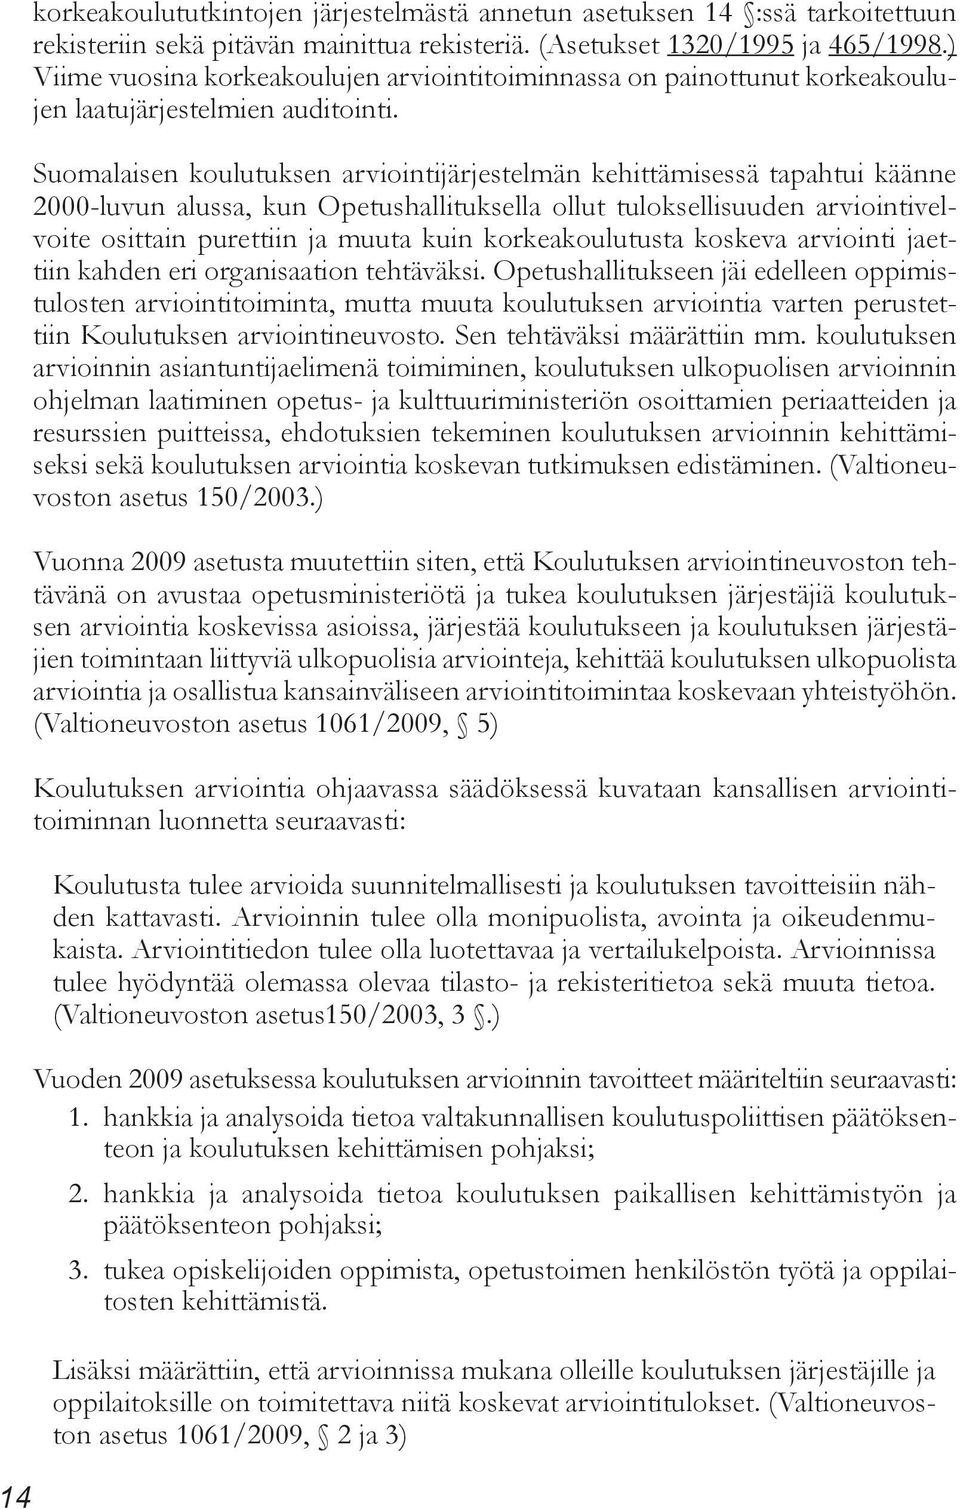 Suomalaisen koulutuksen arviointijärjestelmän kehittämisessä tapahtui käänne 2000-luvun alussa, kun Opetushallituksella ollut tuloksellisuuden arviointivelvoite osittain purettiin ja muuta kuin